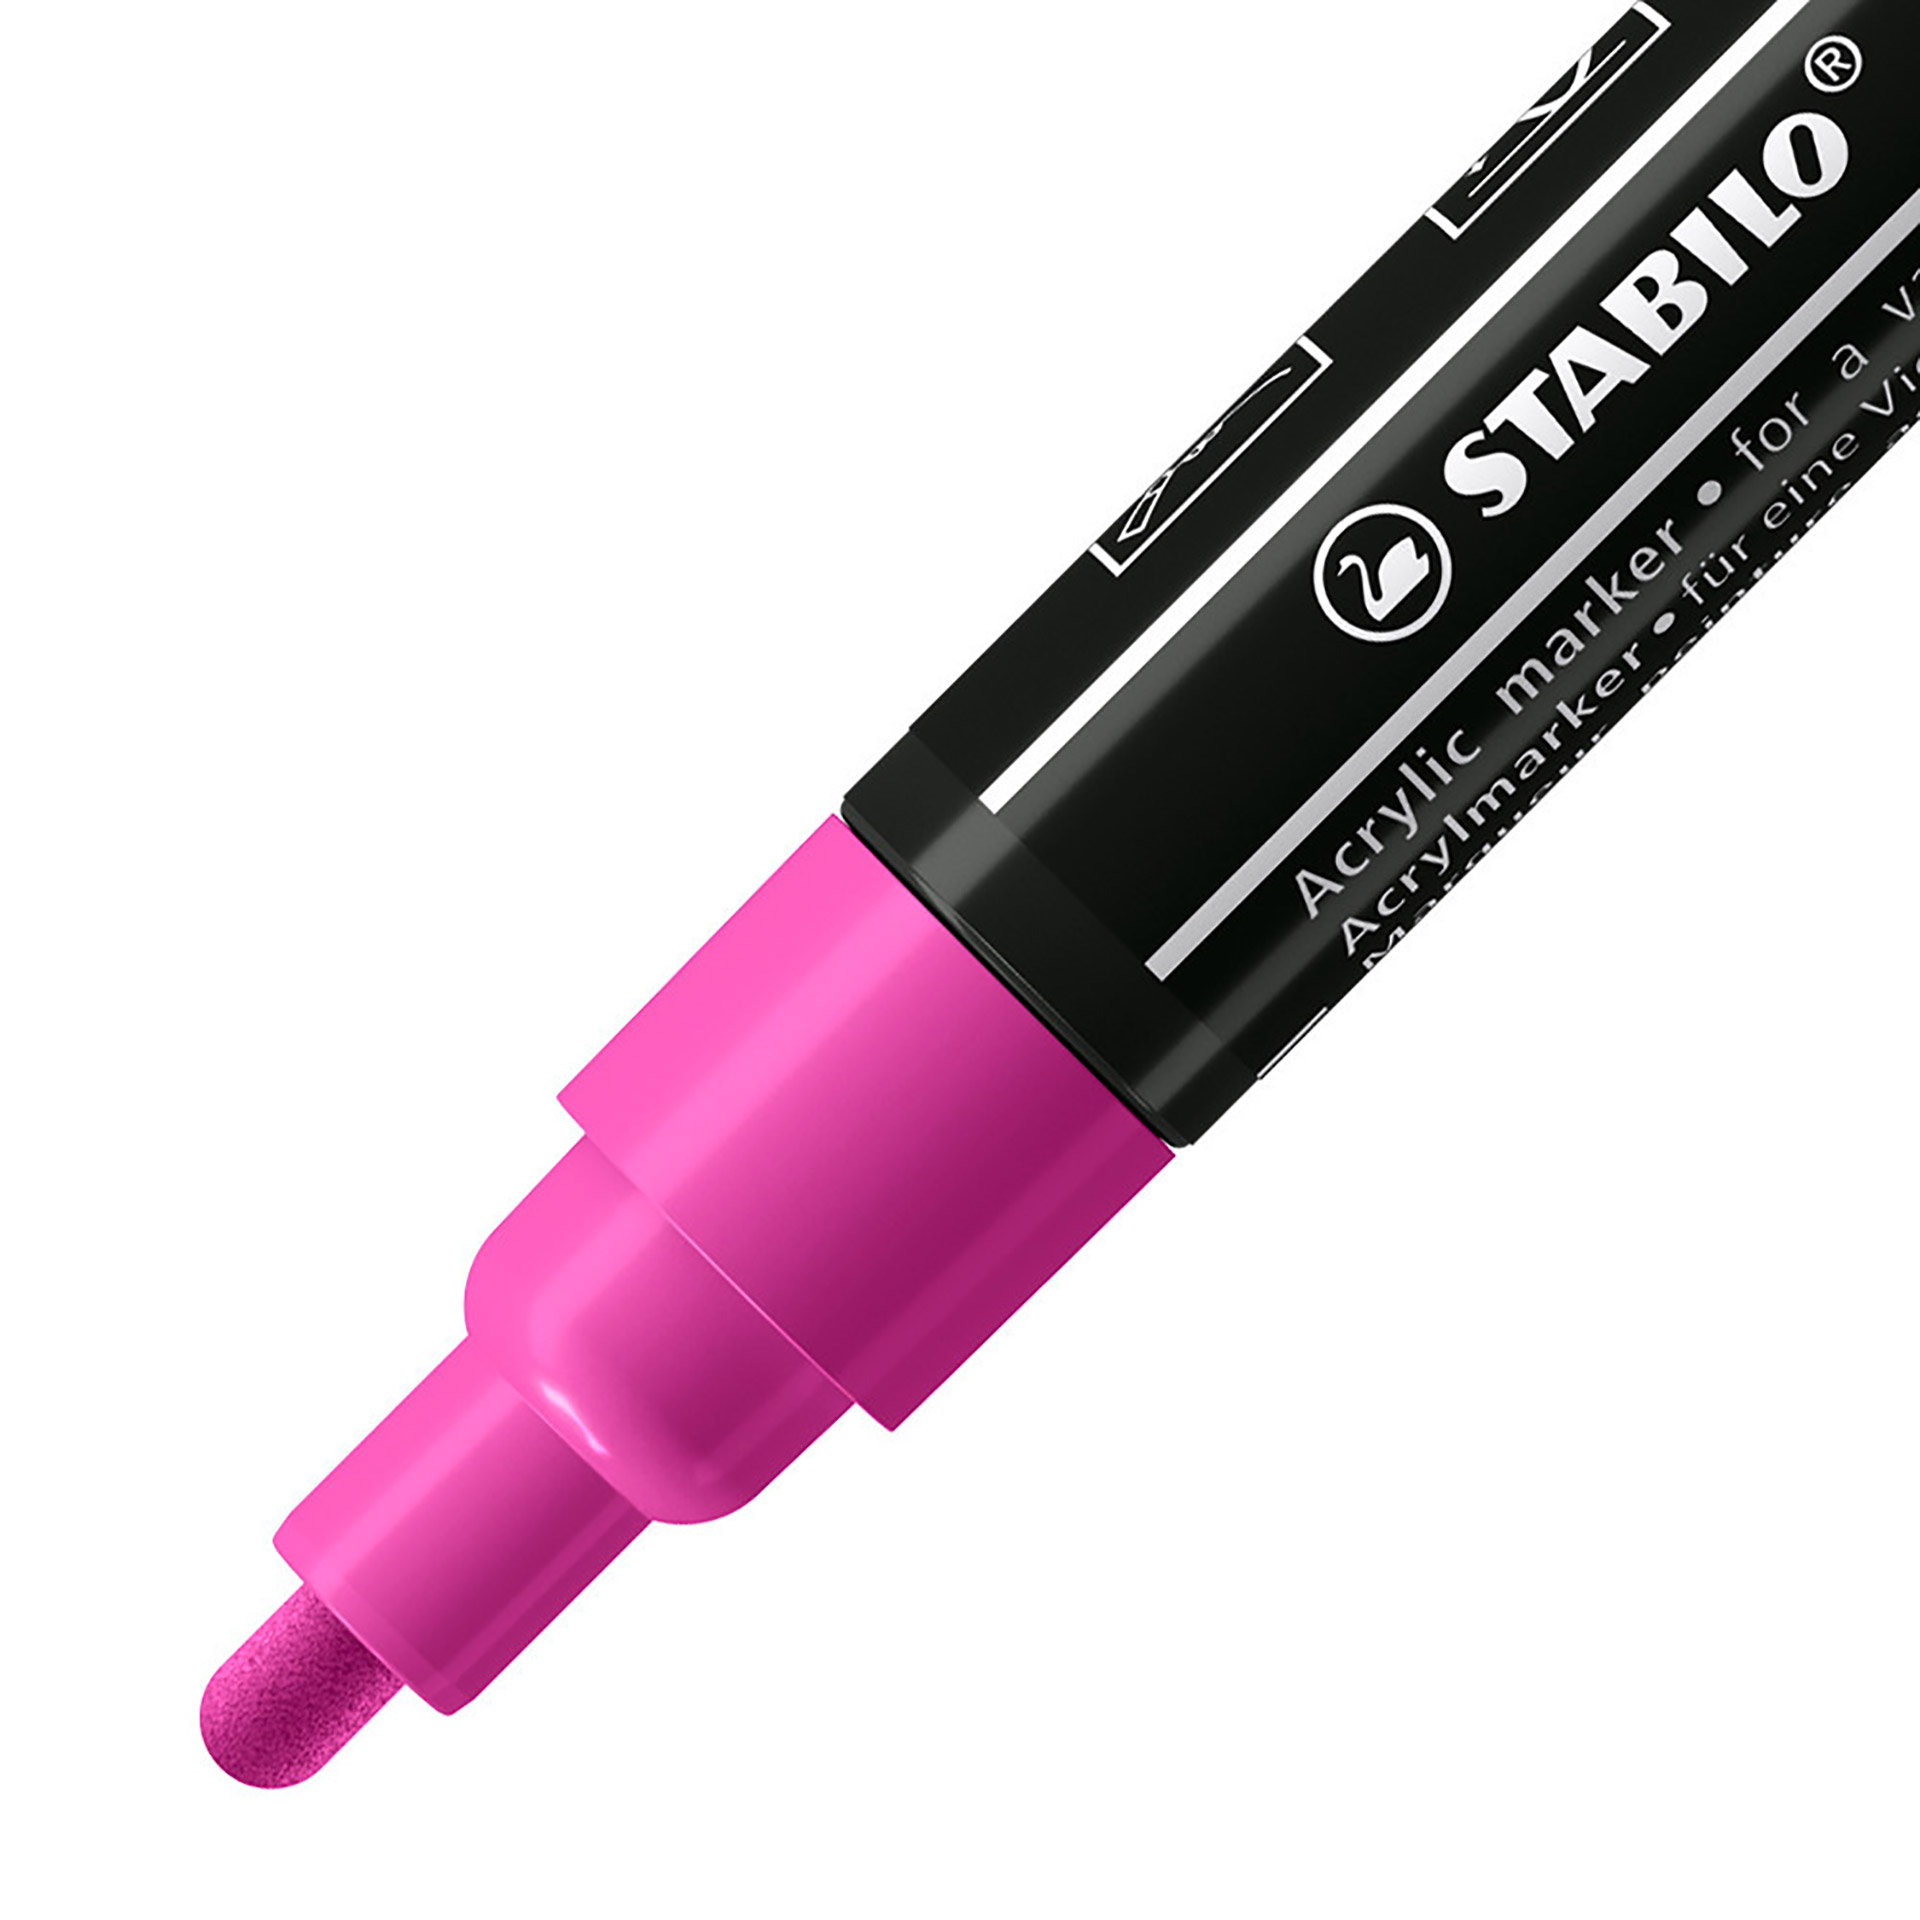 STABILO FREE Acrylic - T300 Punta rotonda 2-3mm - Confezione da 5 - Lilla, , large